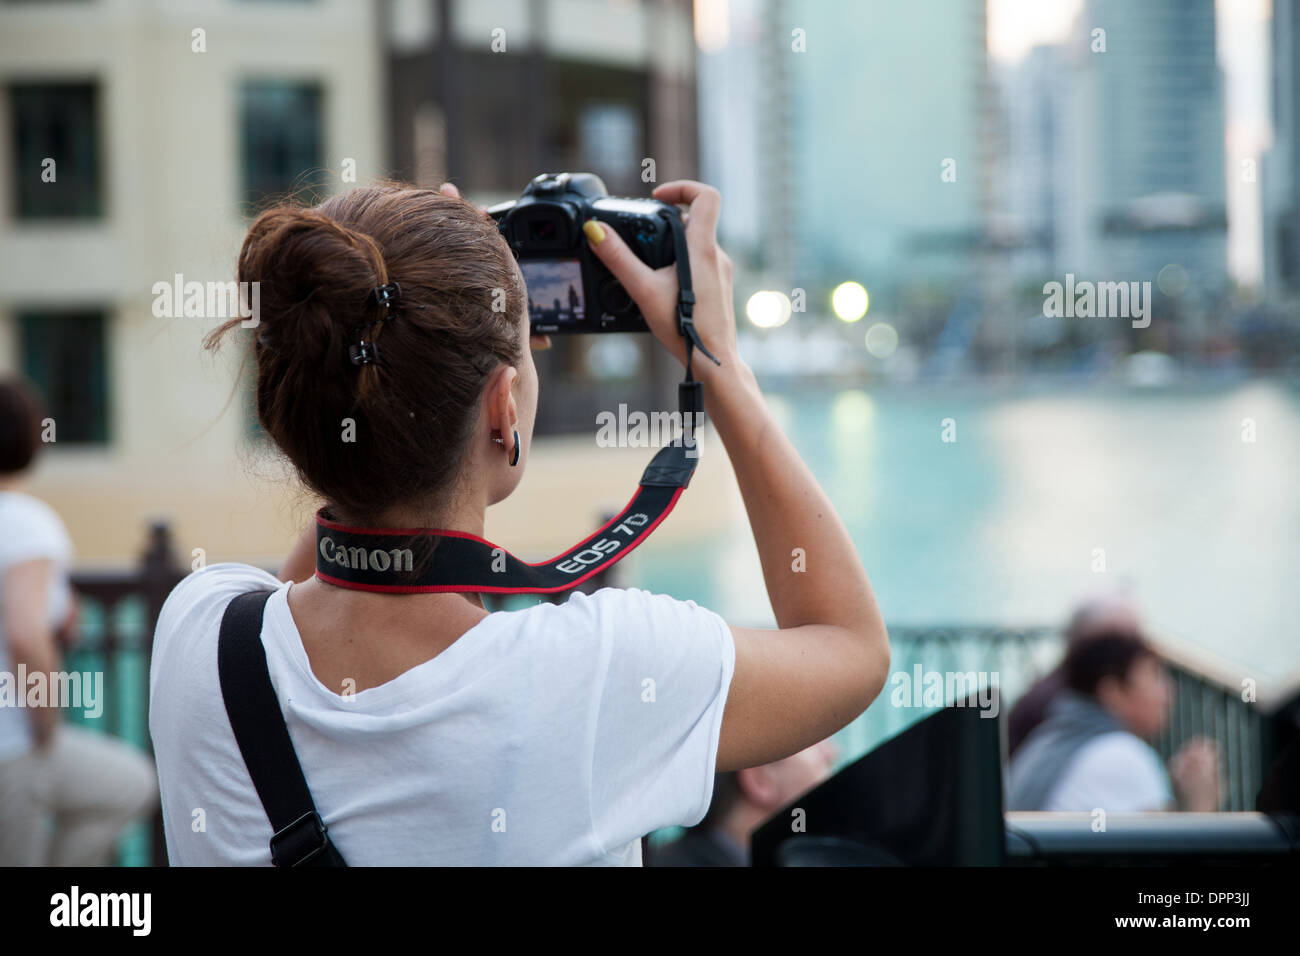 Novembre 23, 2013 - Dubai, UAE: Fotografo prendendo foto della superba architettura della città di Dubai. ** ** Editoriale Foto Stock